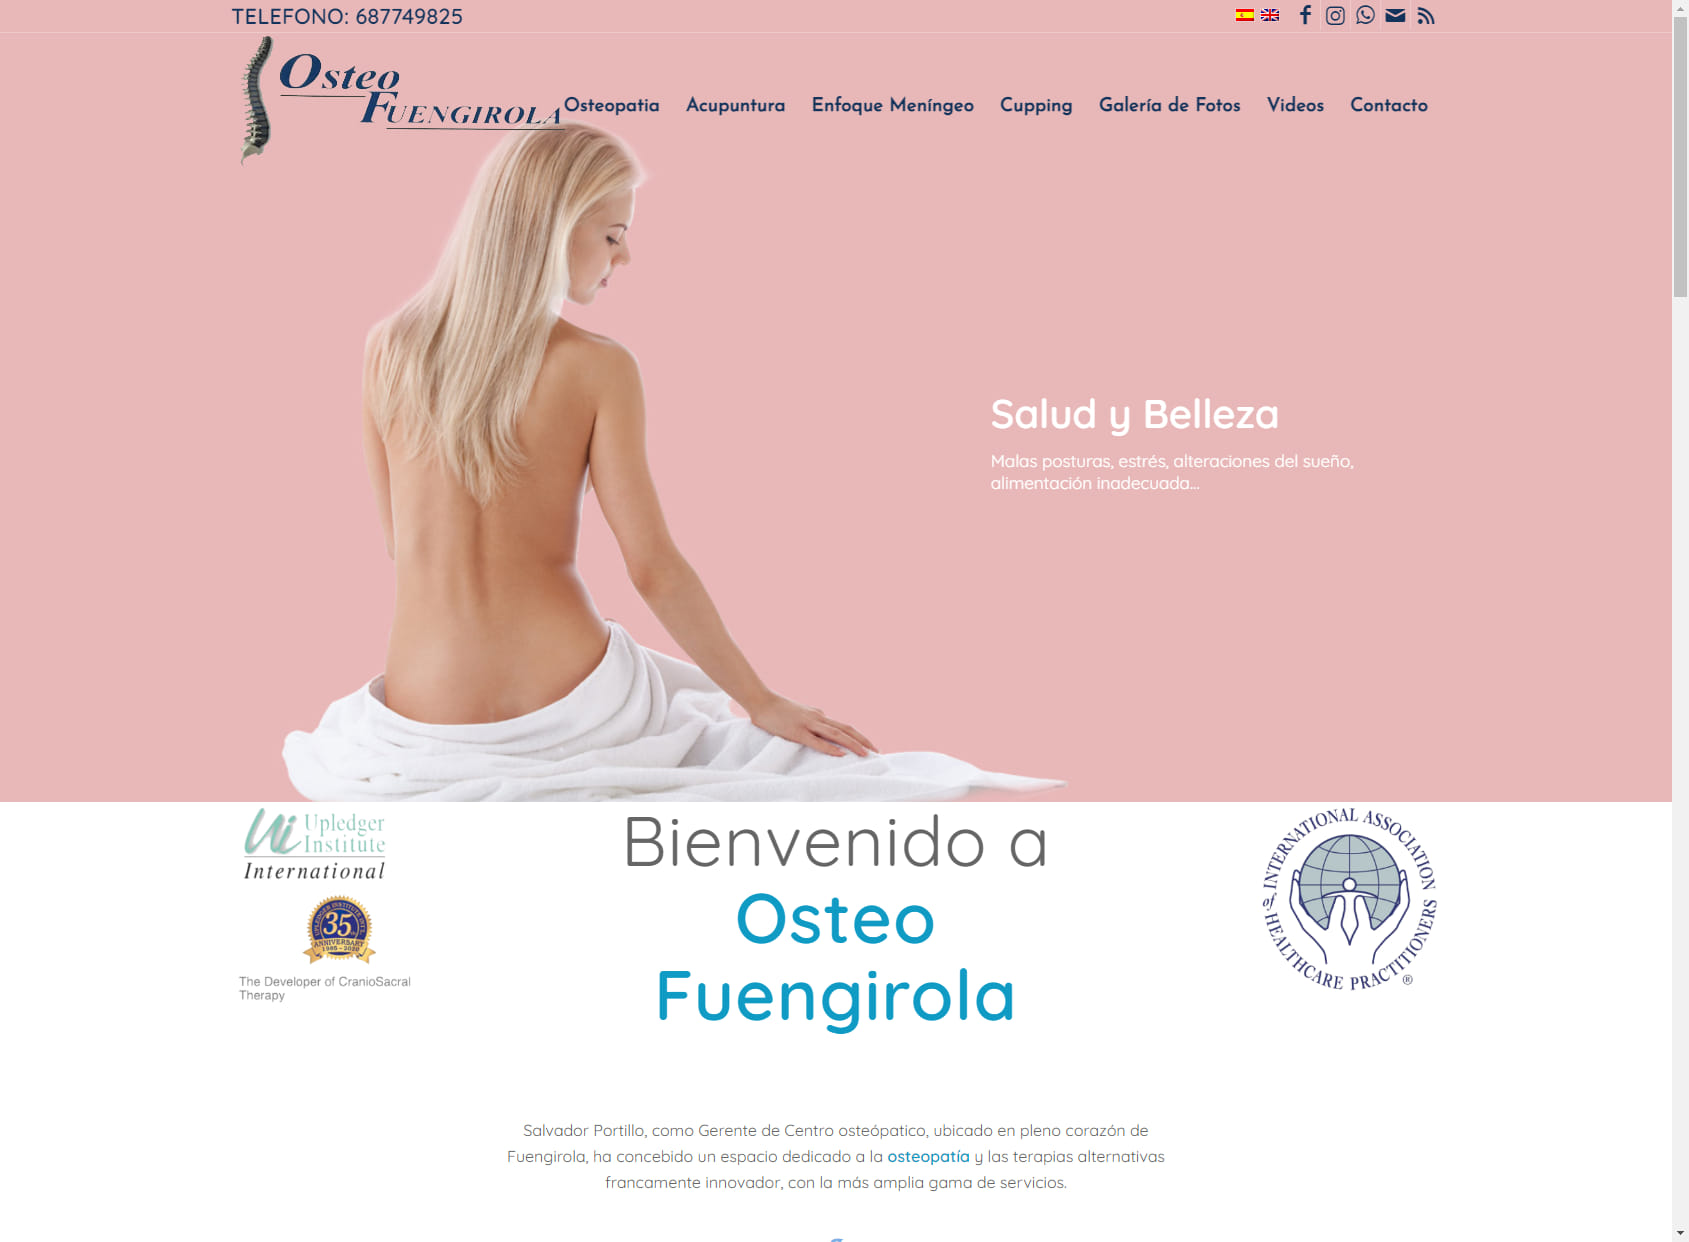 Osteopatía en Fuengirola-Osteofuengirola